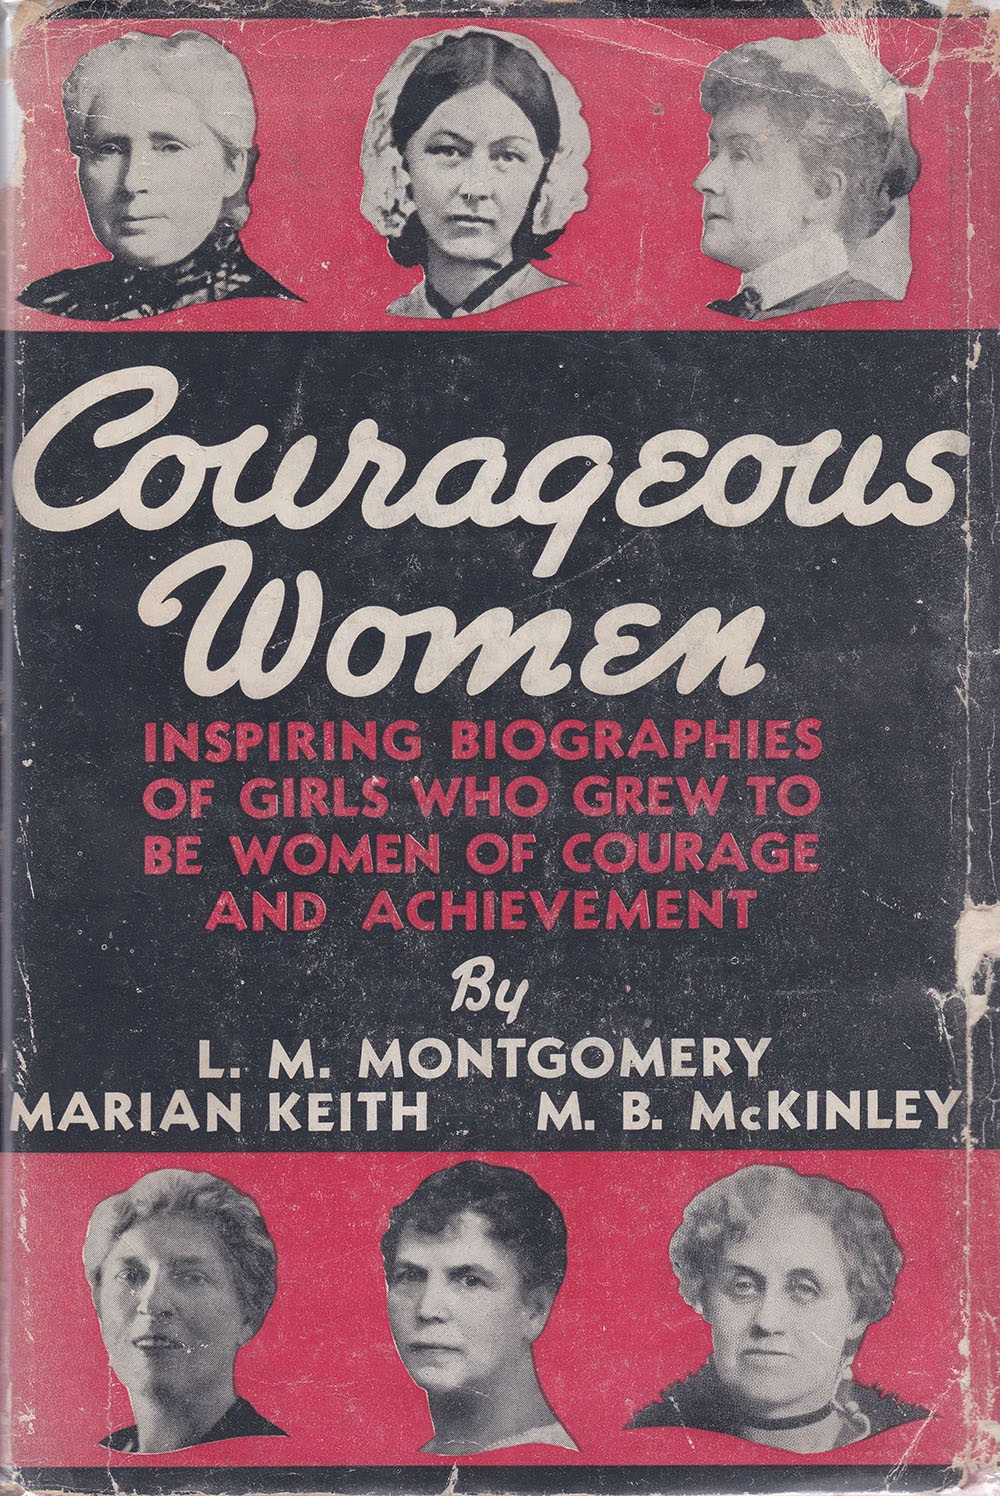 Une couverture de livre noire et rouge éclatant, où figurent deux rangées de photographies des femmes célèbres présentées dans l’ouvrage.